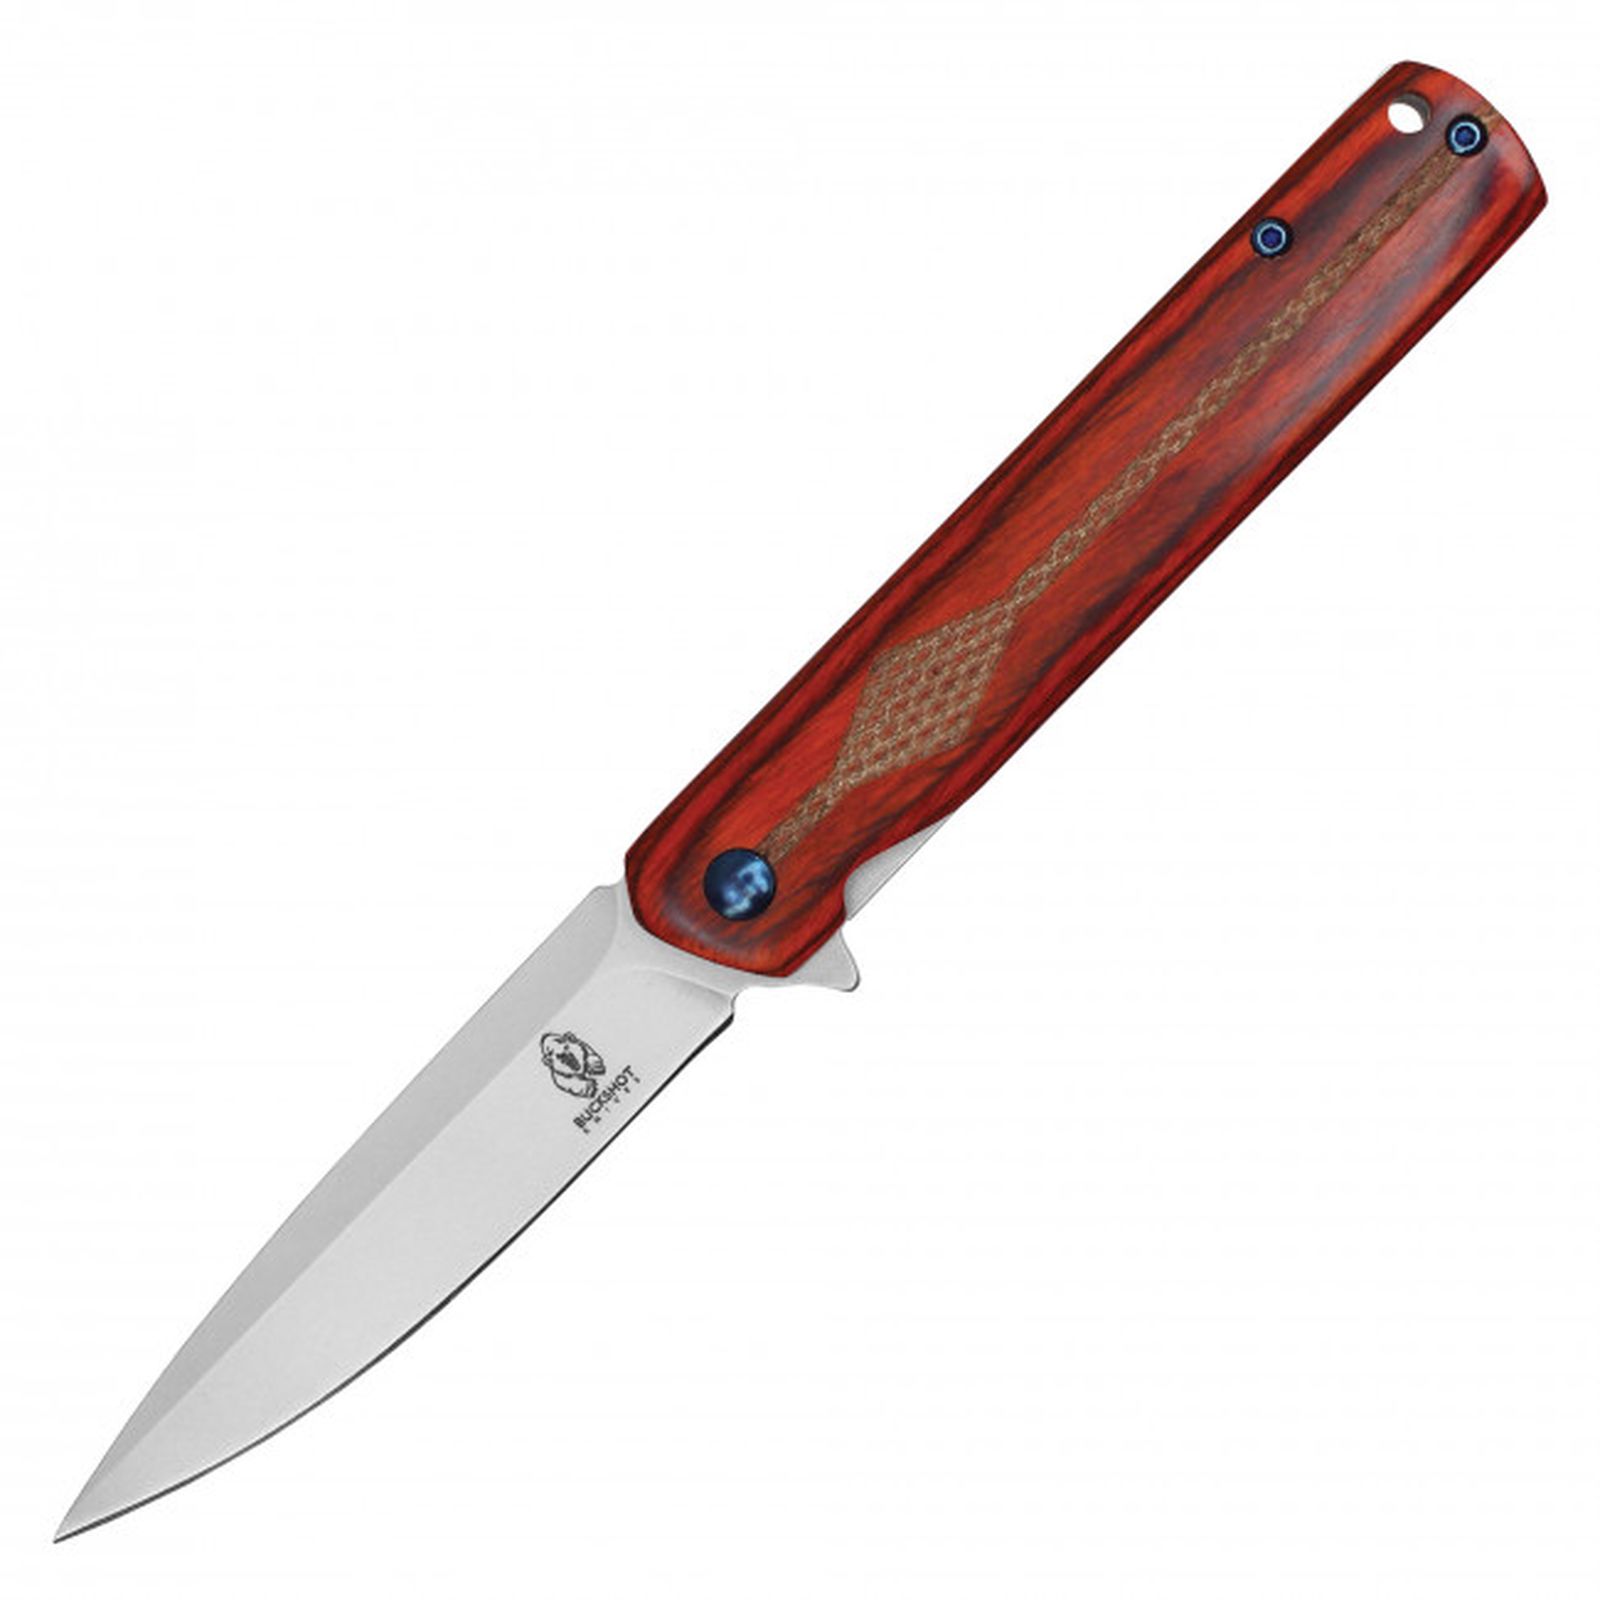 Pocket Knife Buckshot Spring-Assist Folding Blade Pocket Clip - Brown Wood